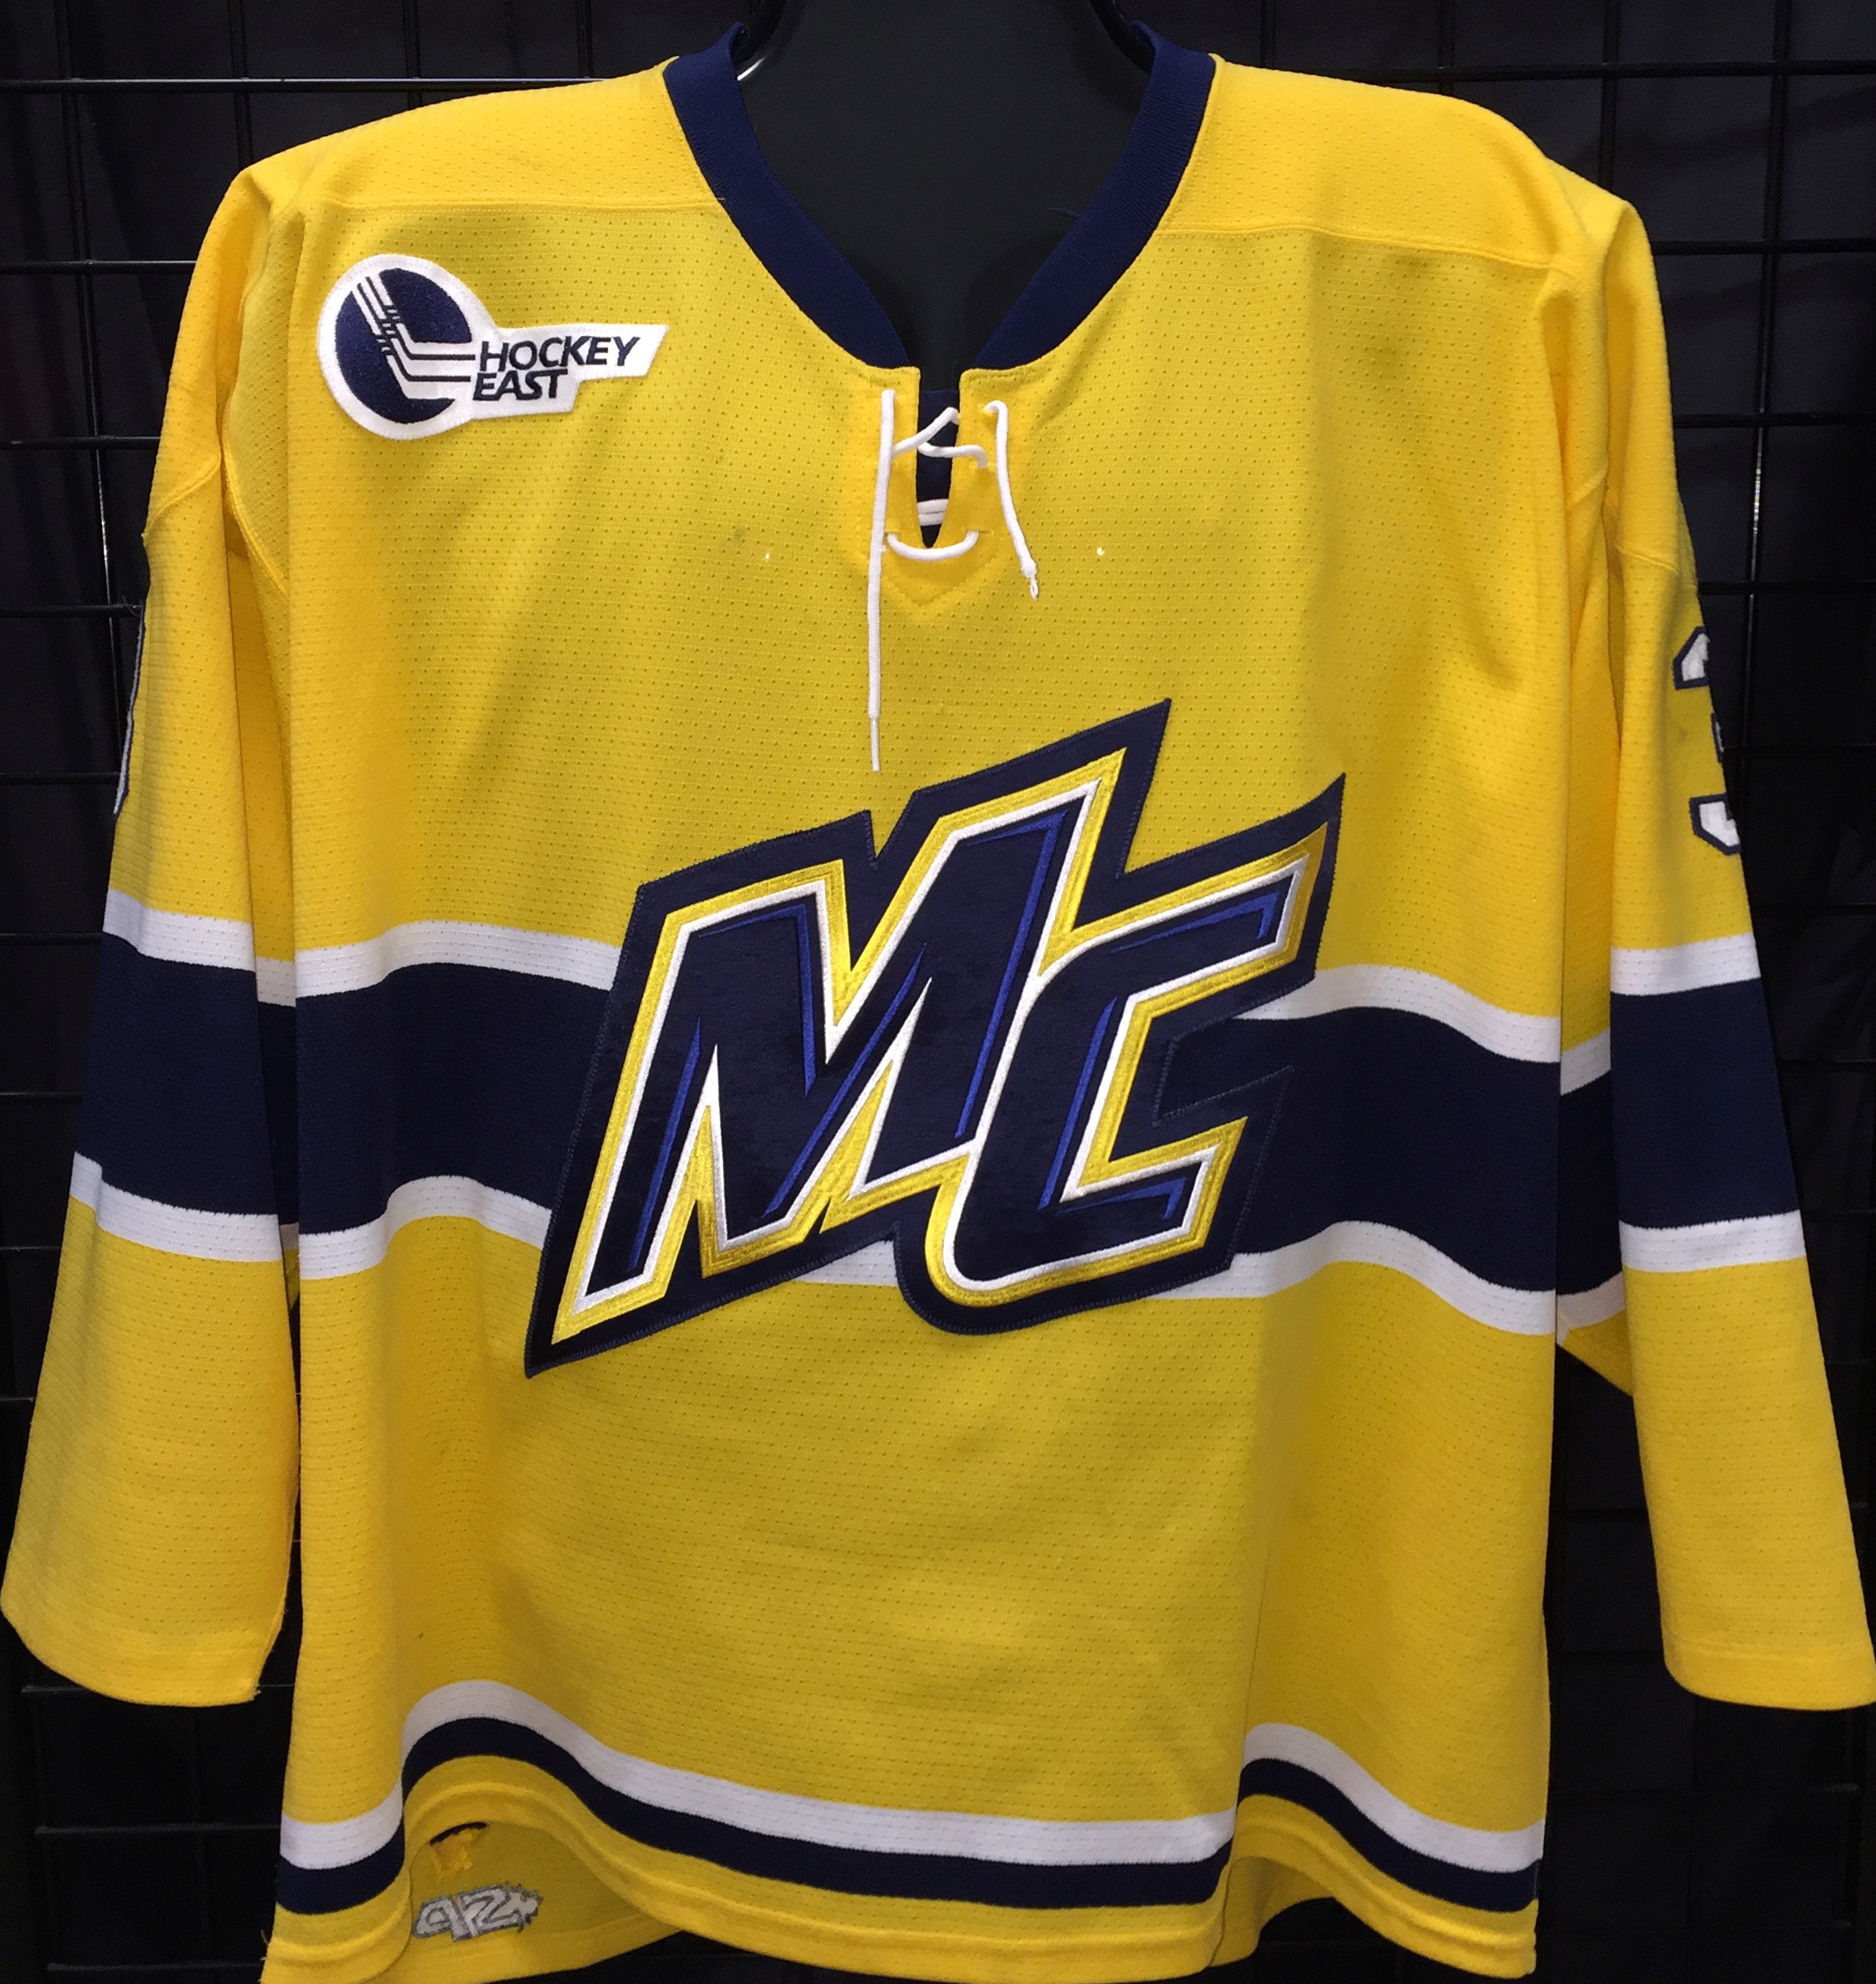 merrimack college hockey jersey